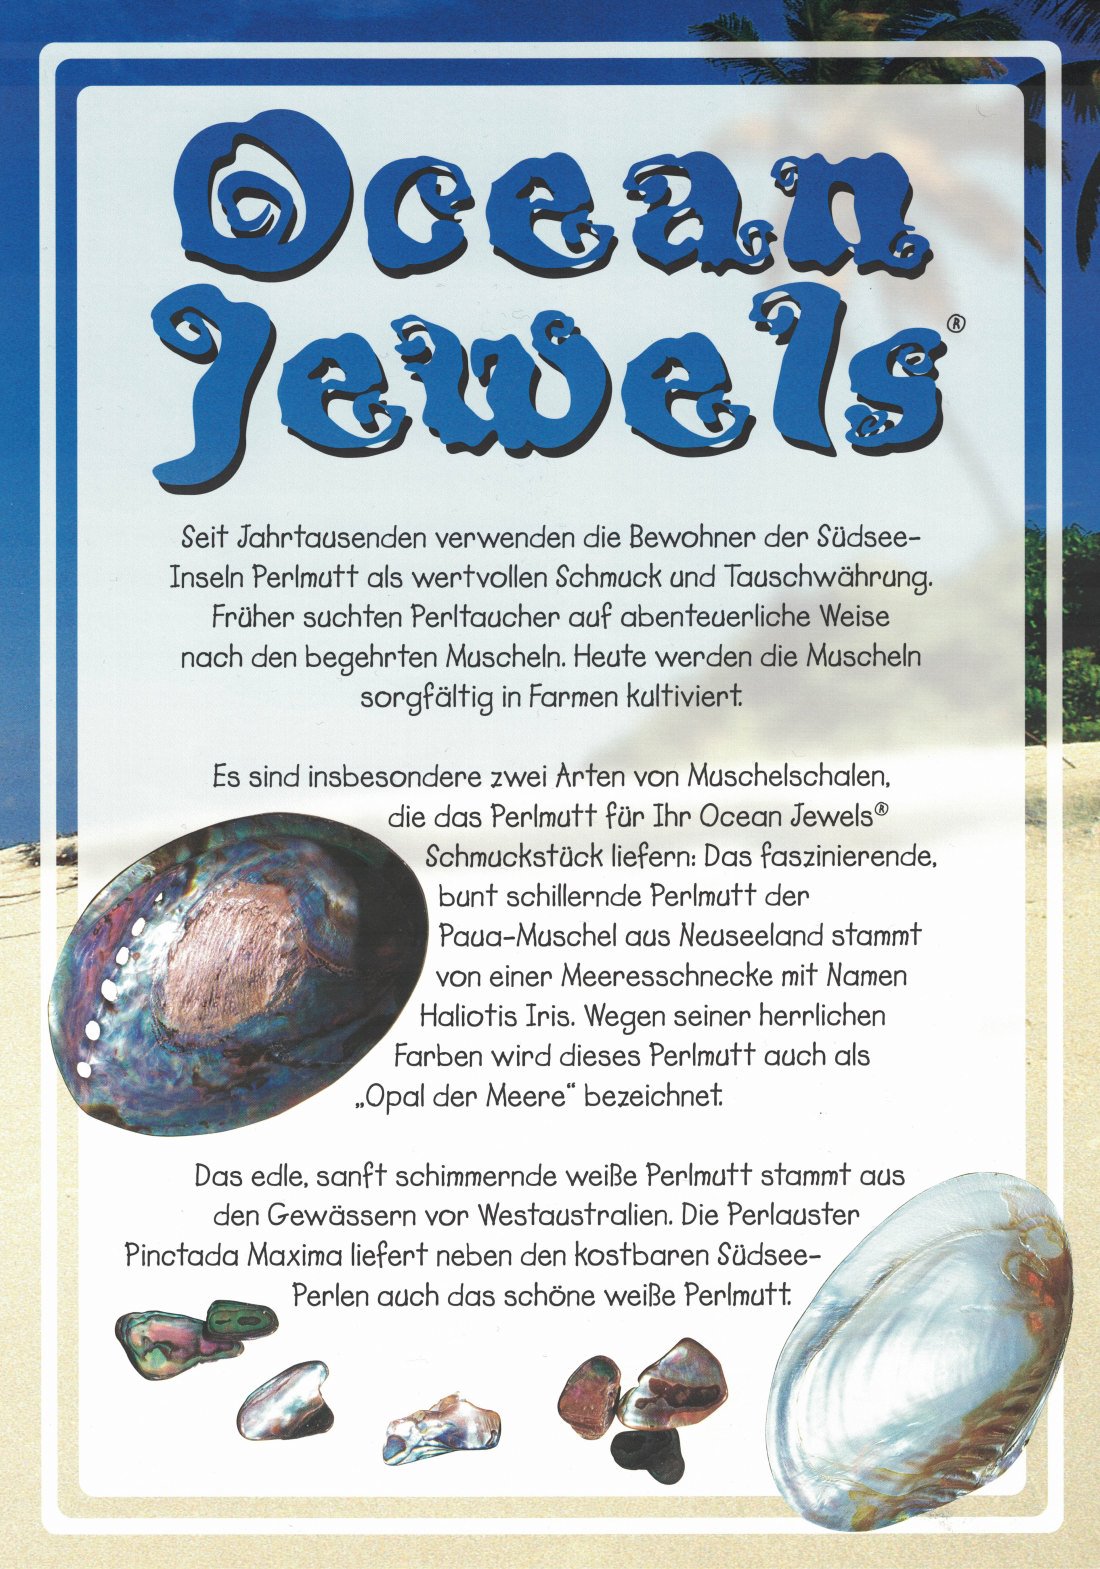 Ocean Jewels - Paua Muschel Teddy Bär Armband Schmuck mit Schließe PM105